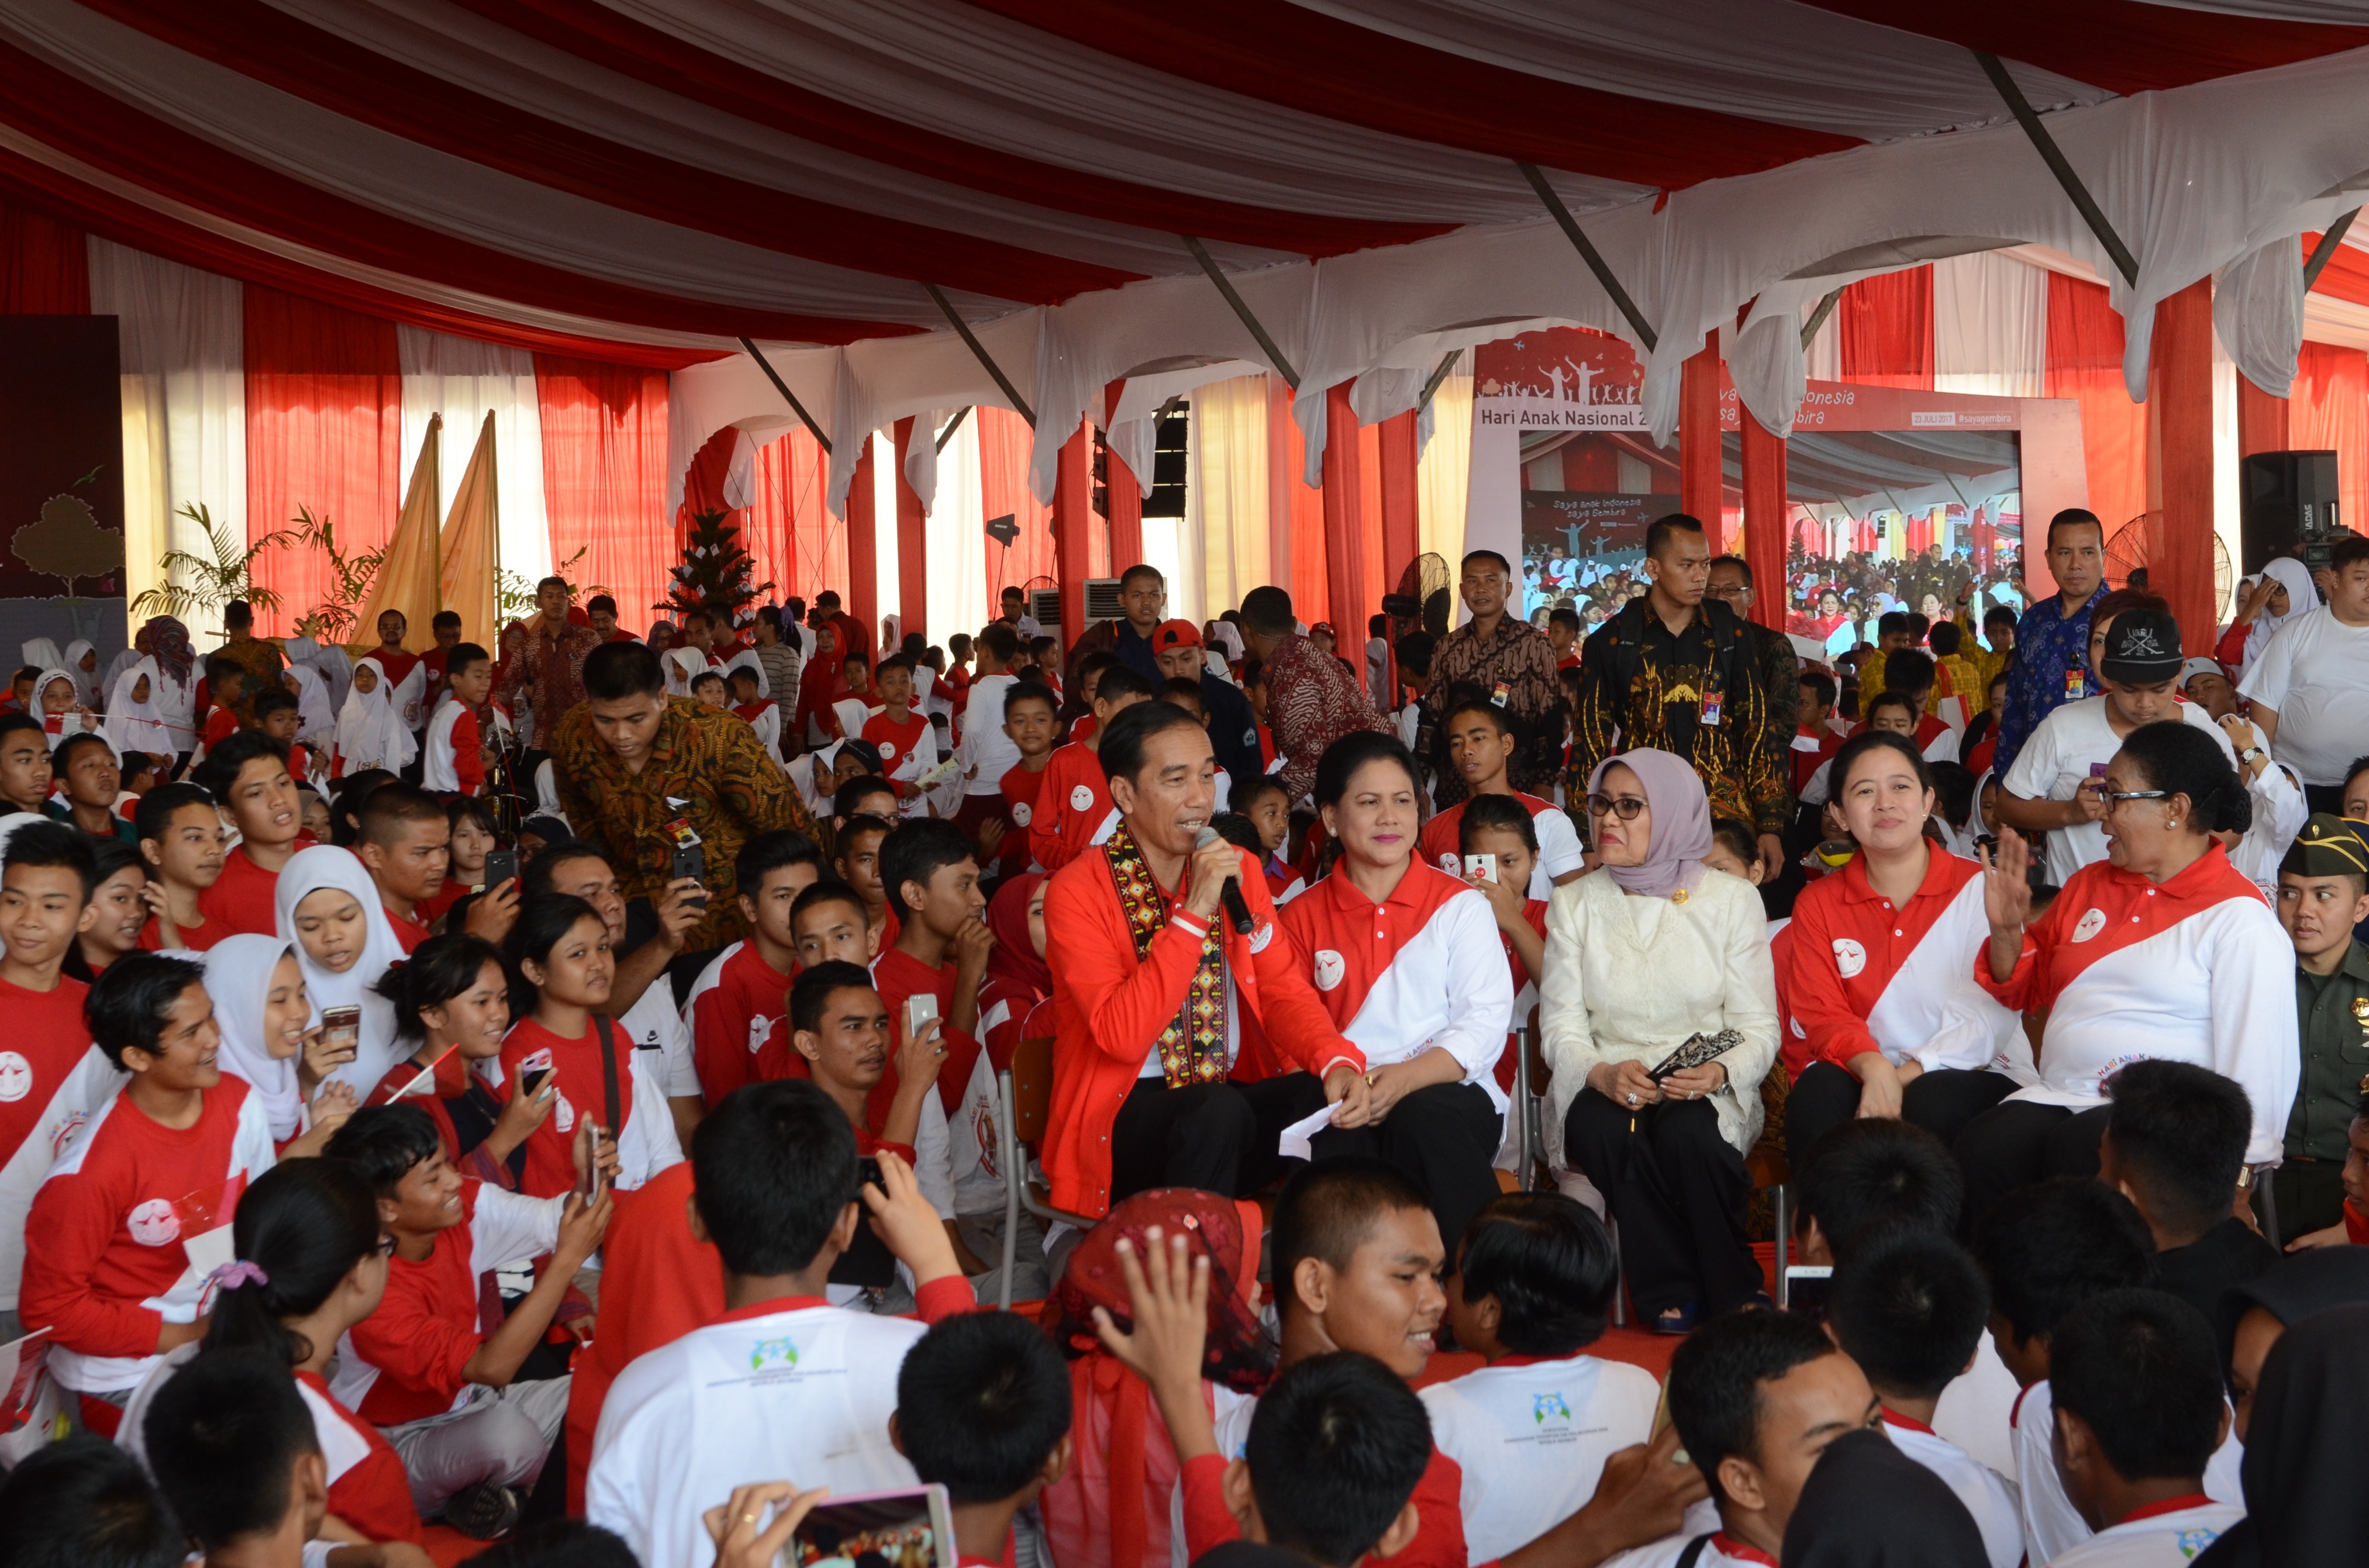 Presiden Jokowi dalam acara puncak Peringatan Hari Anak Nasional di Pekanbaru (setkab.go.id)